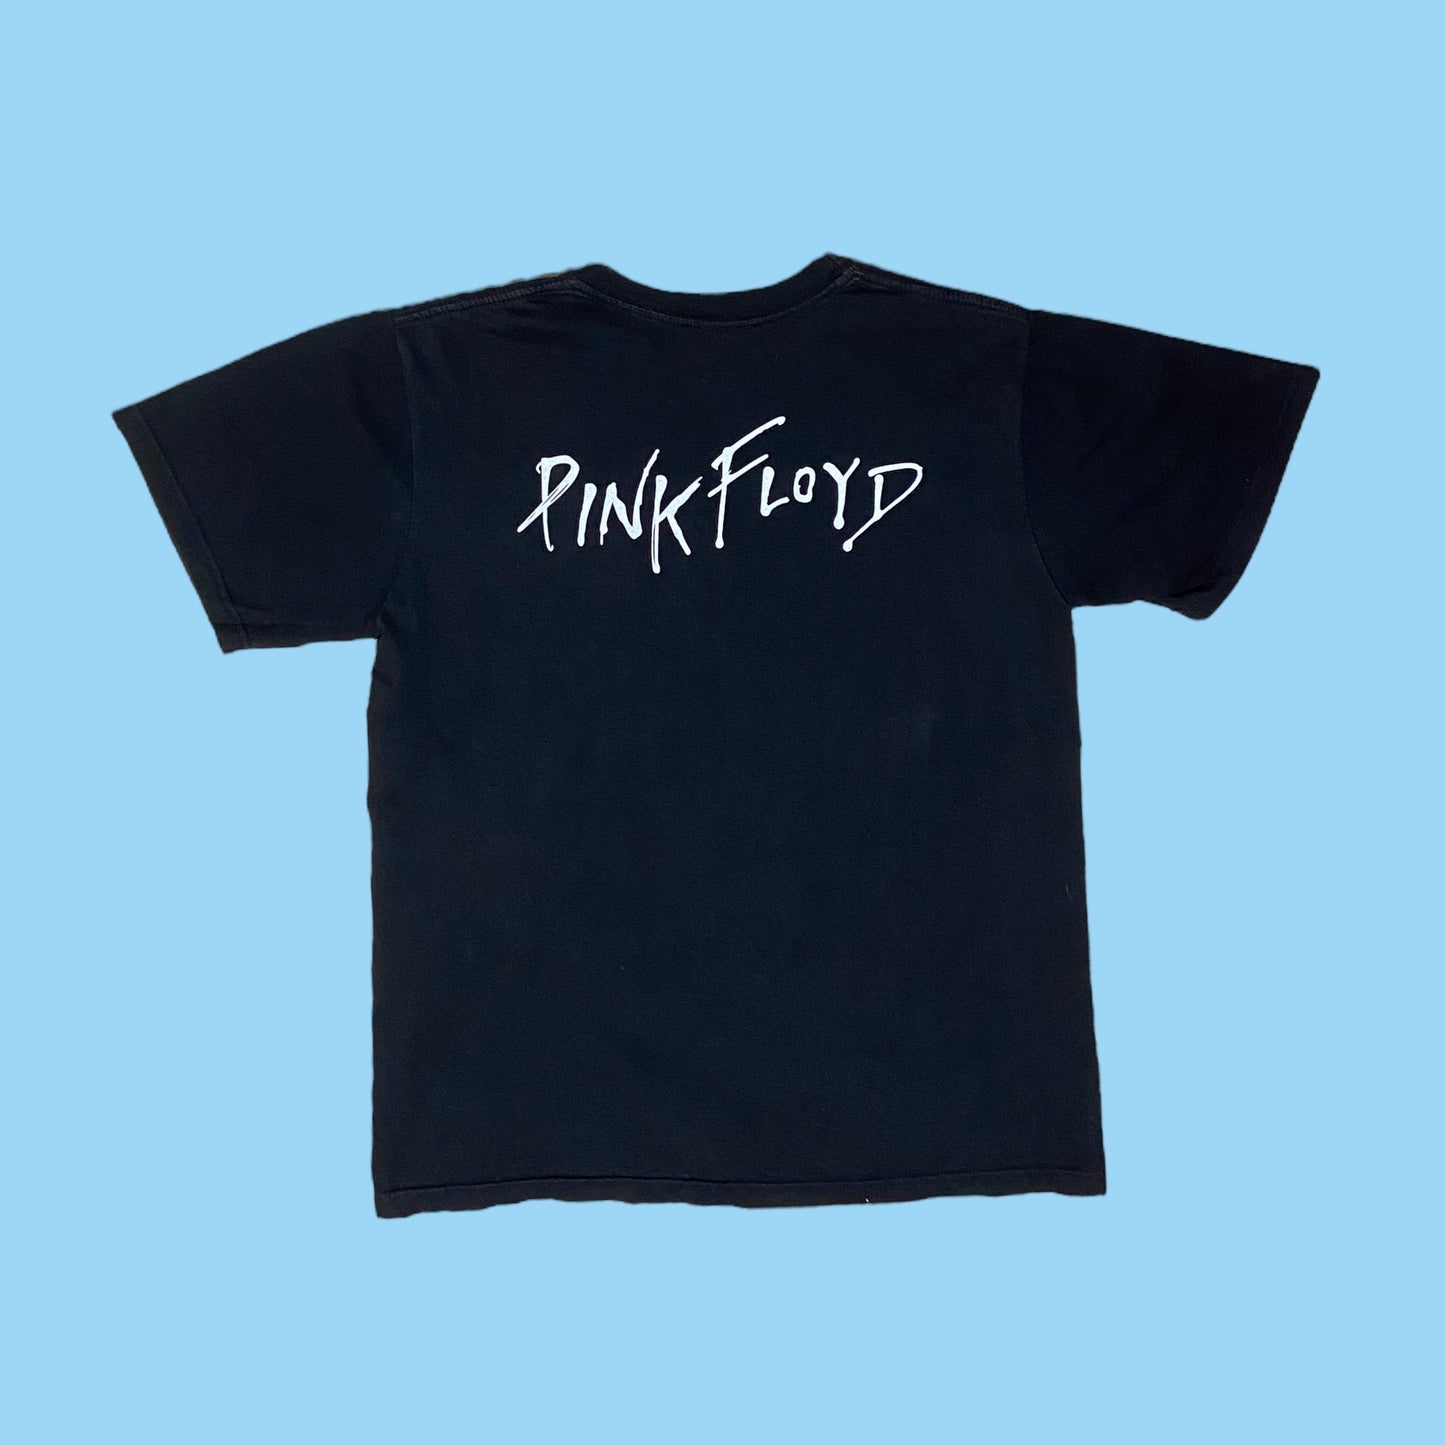 Vintage Spirit of Pink Floyd Show t-shirt - L